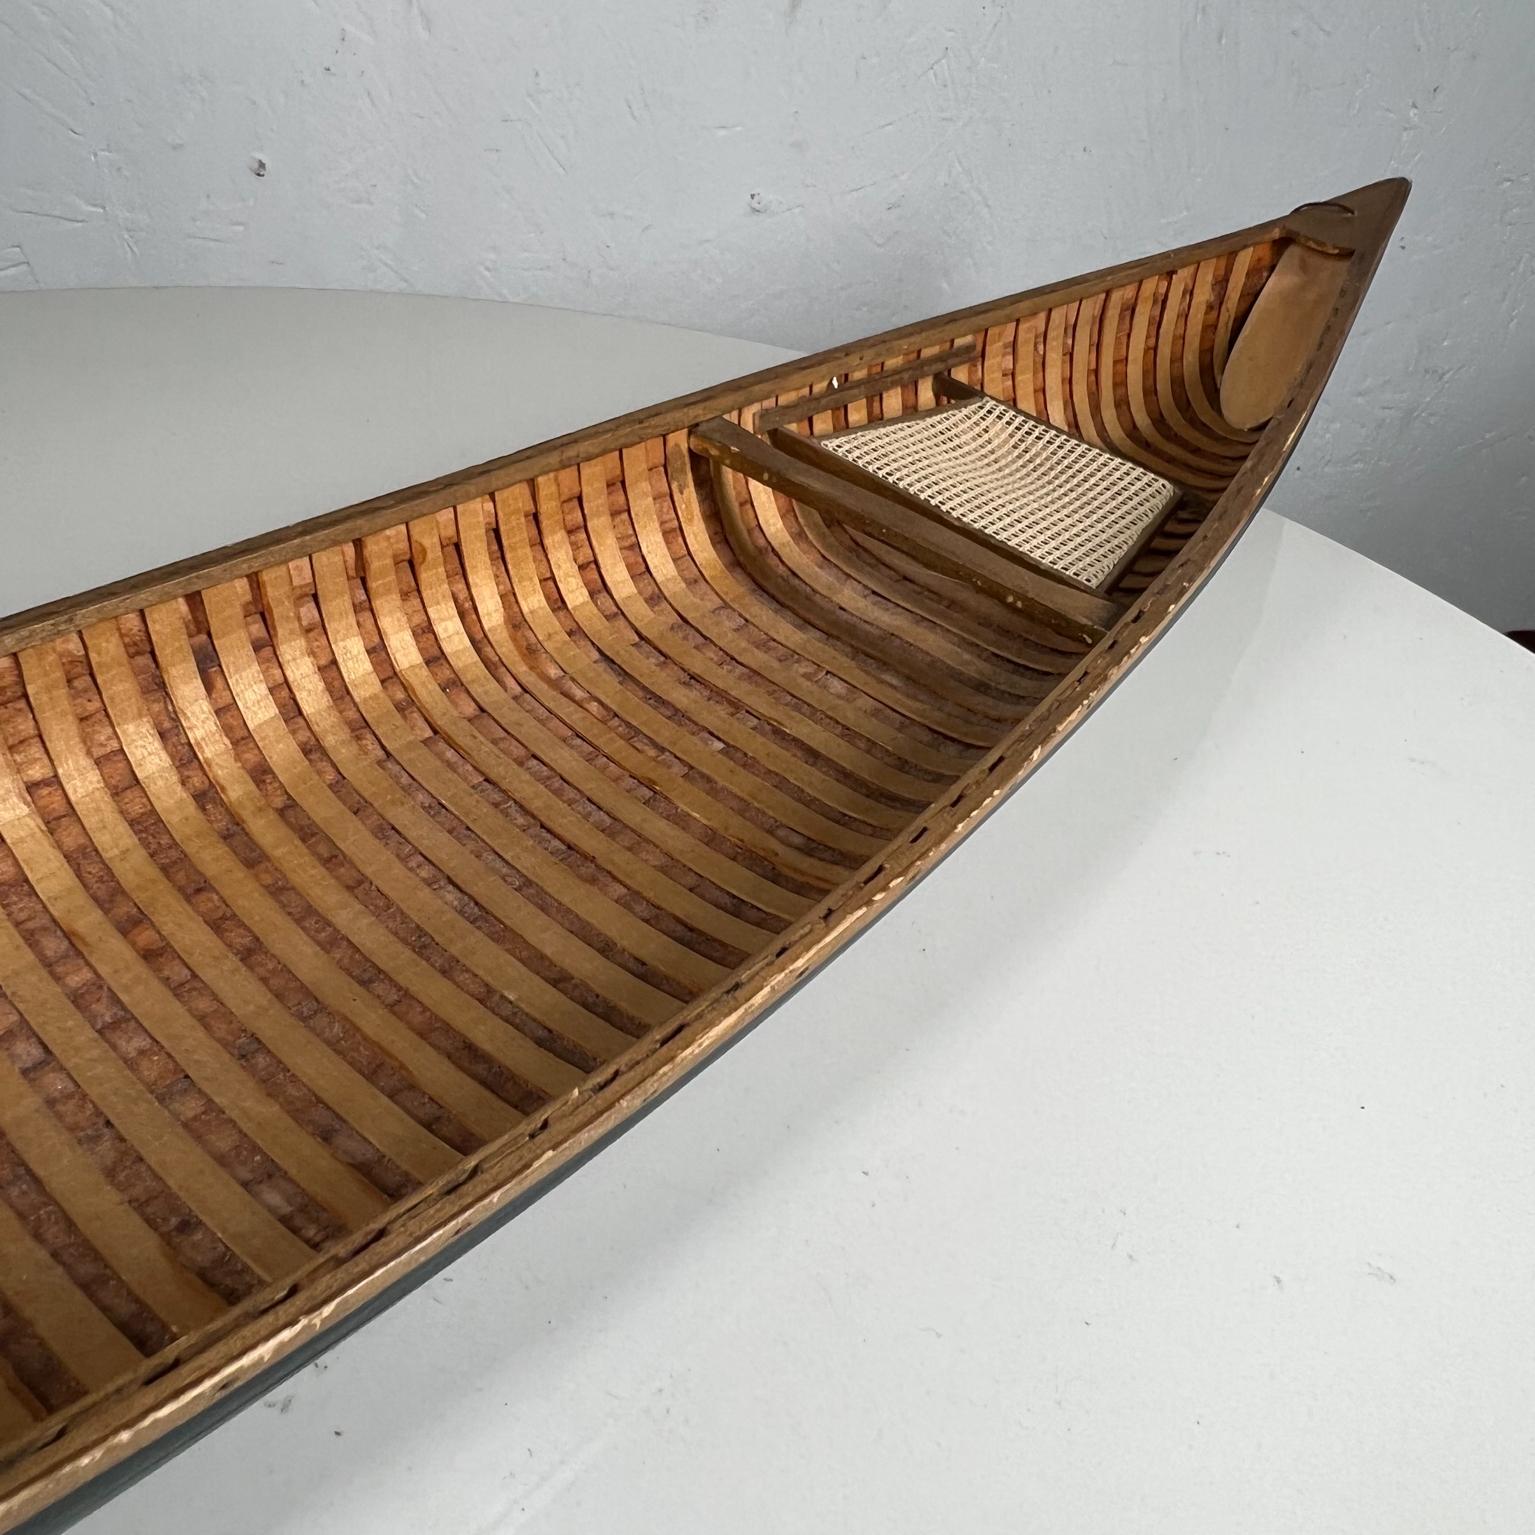 Modern Art Sculpture Collectible Miniature Wooden Canoe Model 1